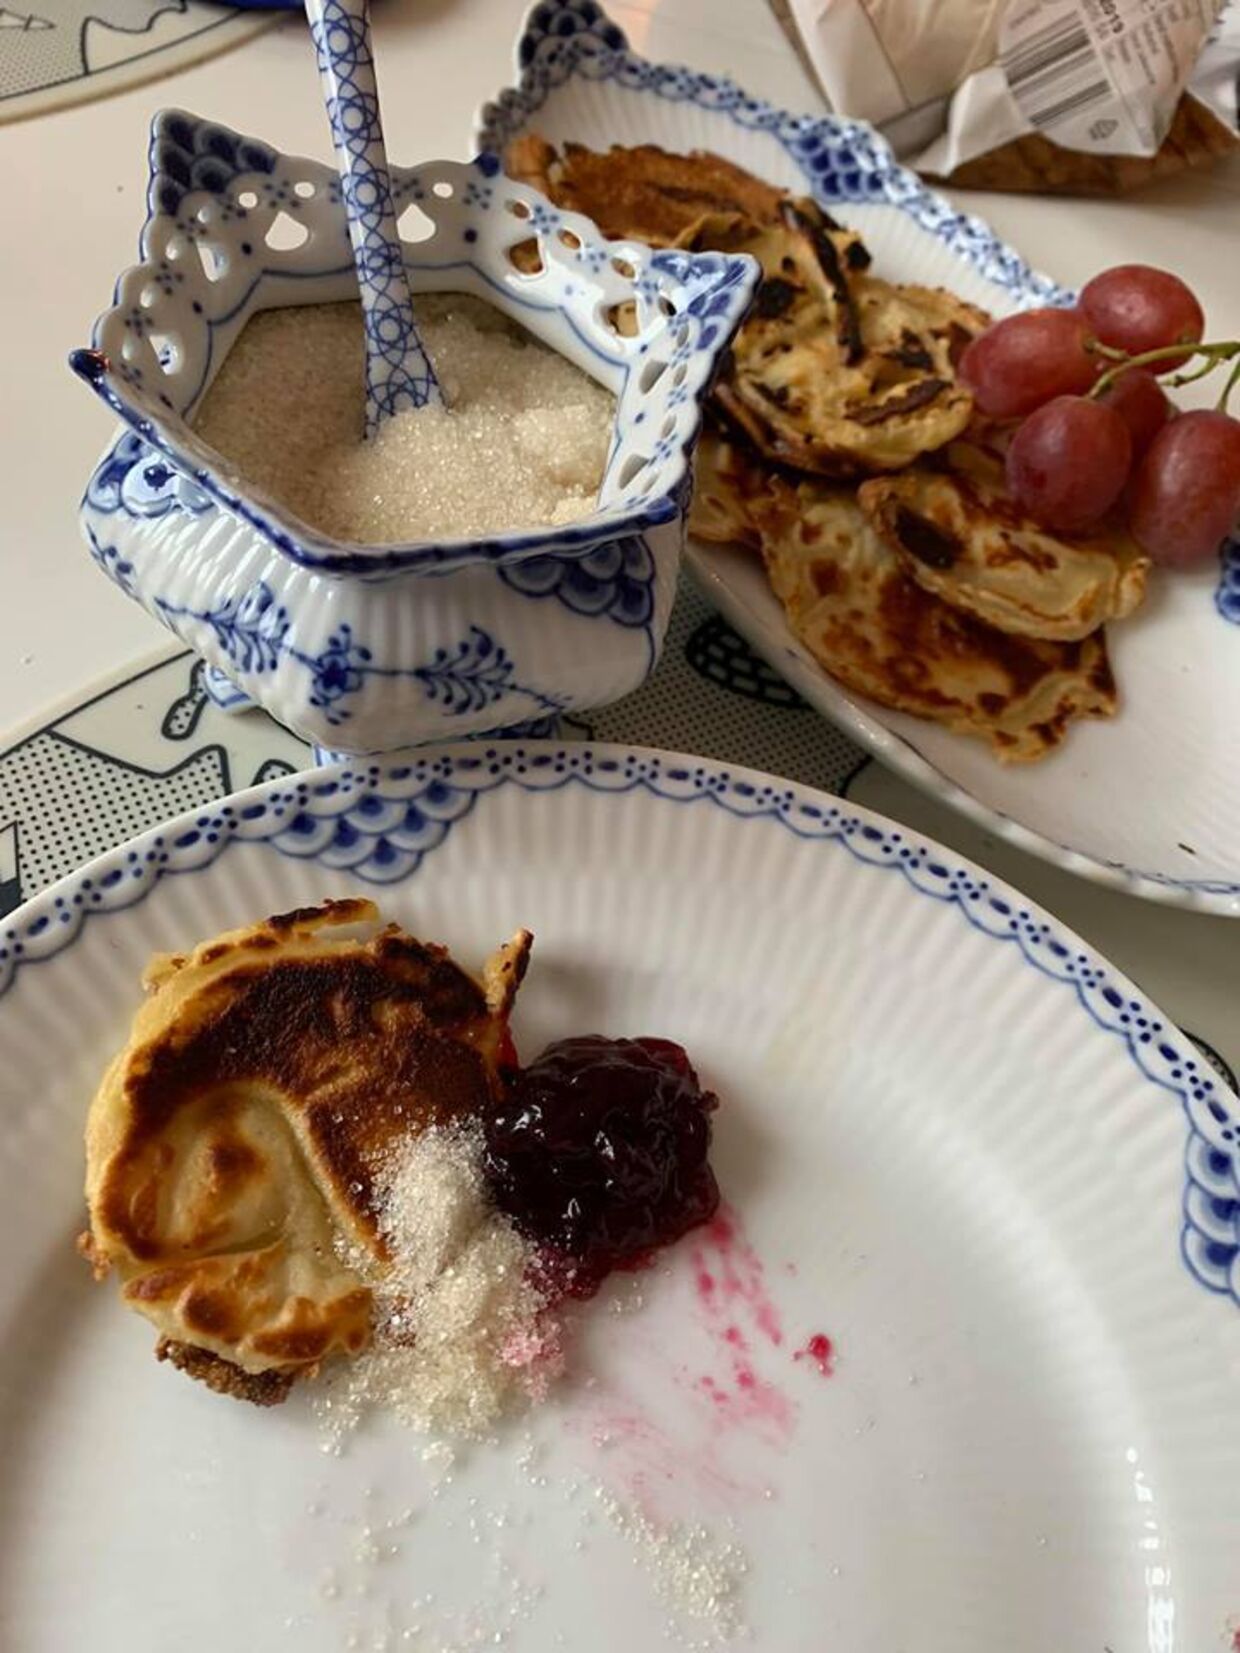 I julen lavede Signe Grønnebæk pandekager til sig selv og sine forældre. «Min far blev helt rørt over at se mig stå ved komfuret,« siger hun. Foto fra bloggen Anoreksigne.dk